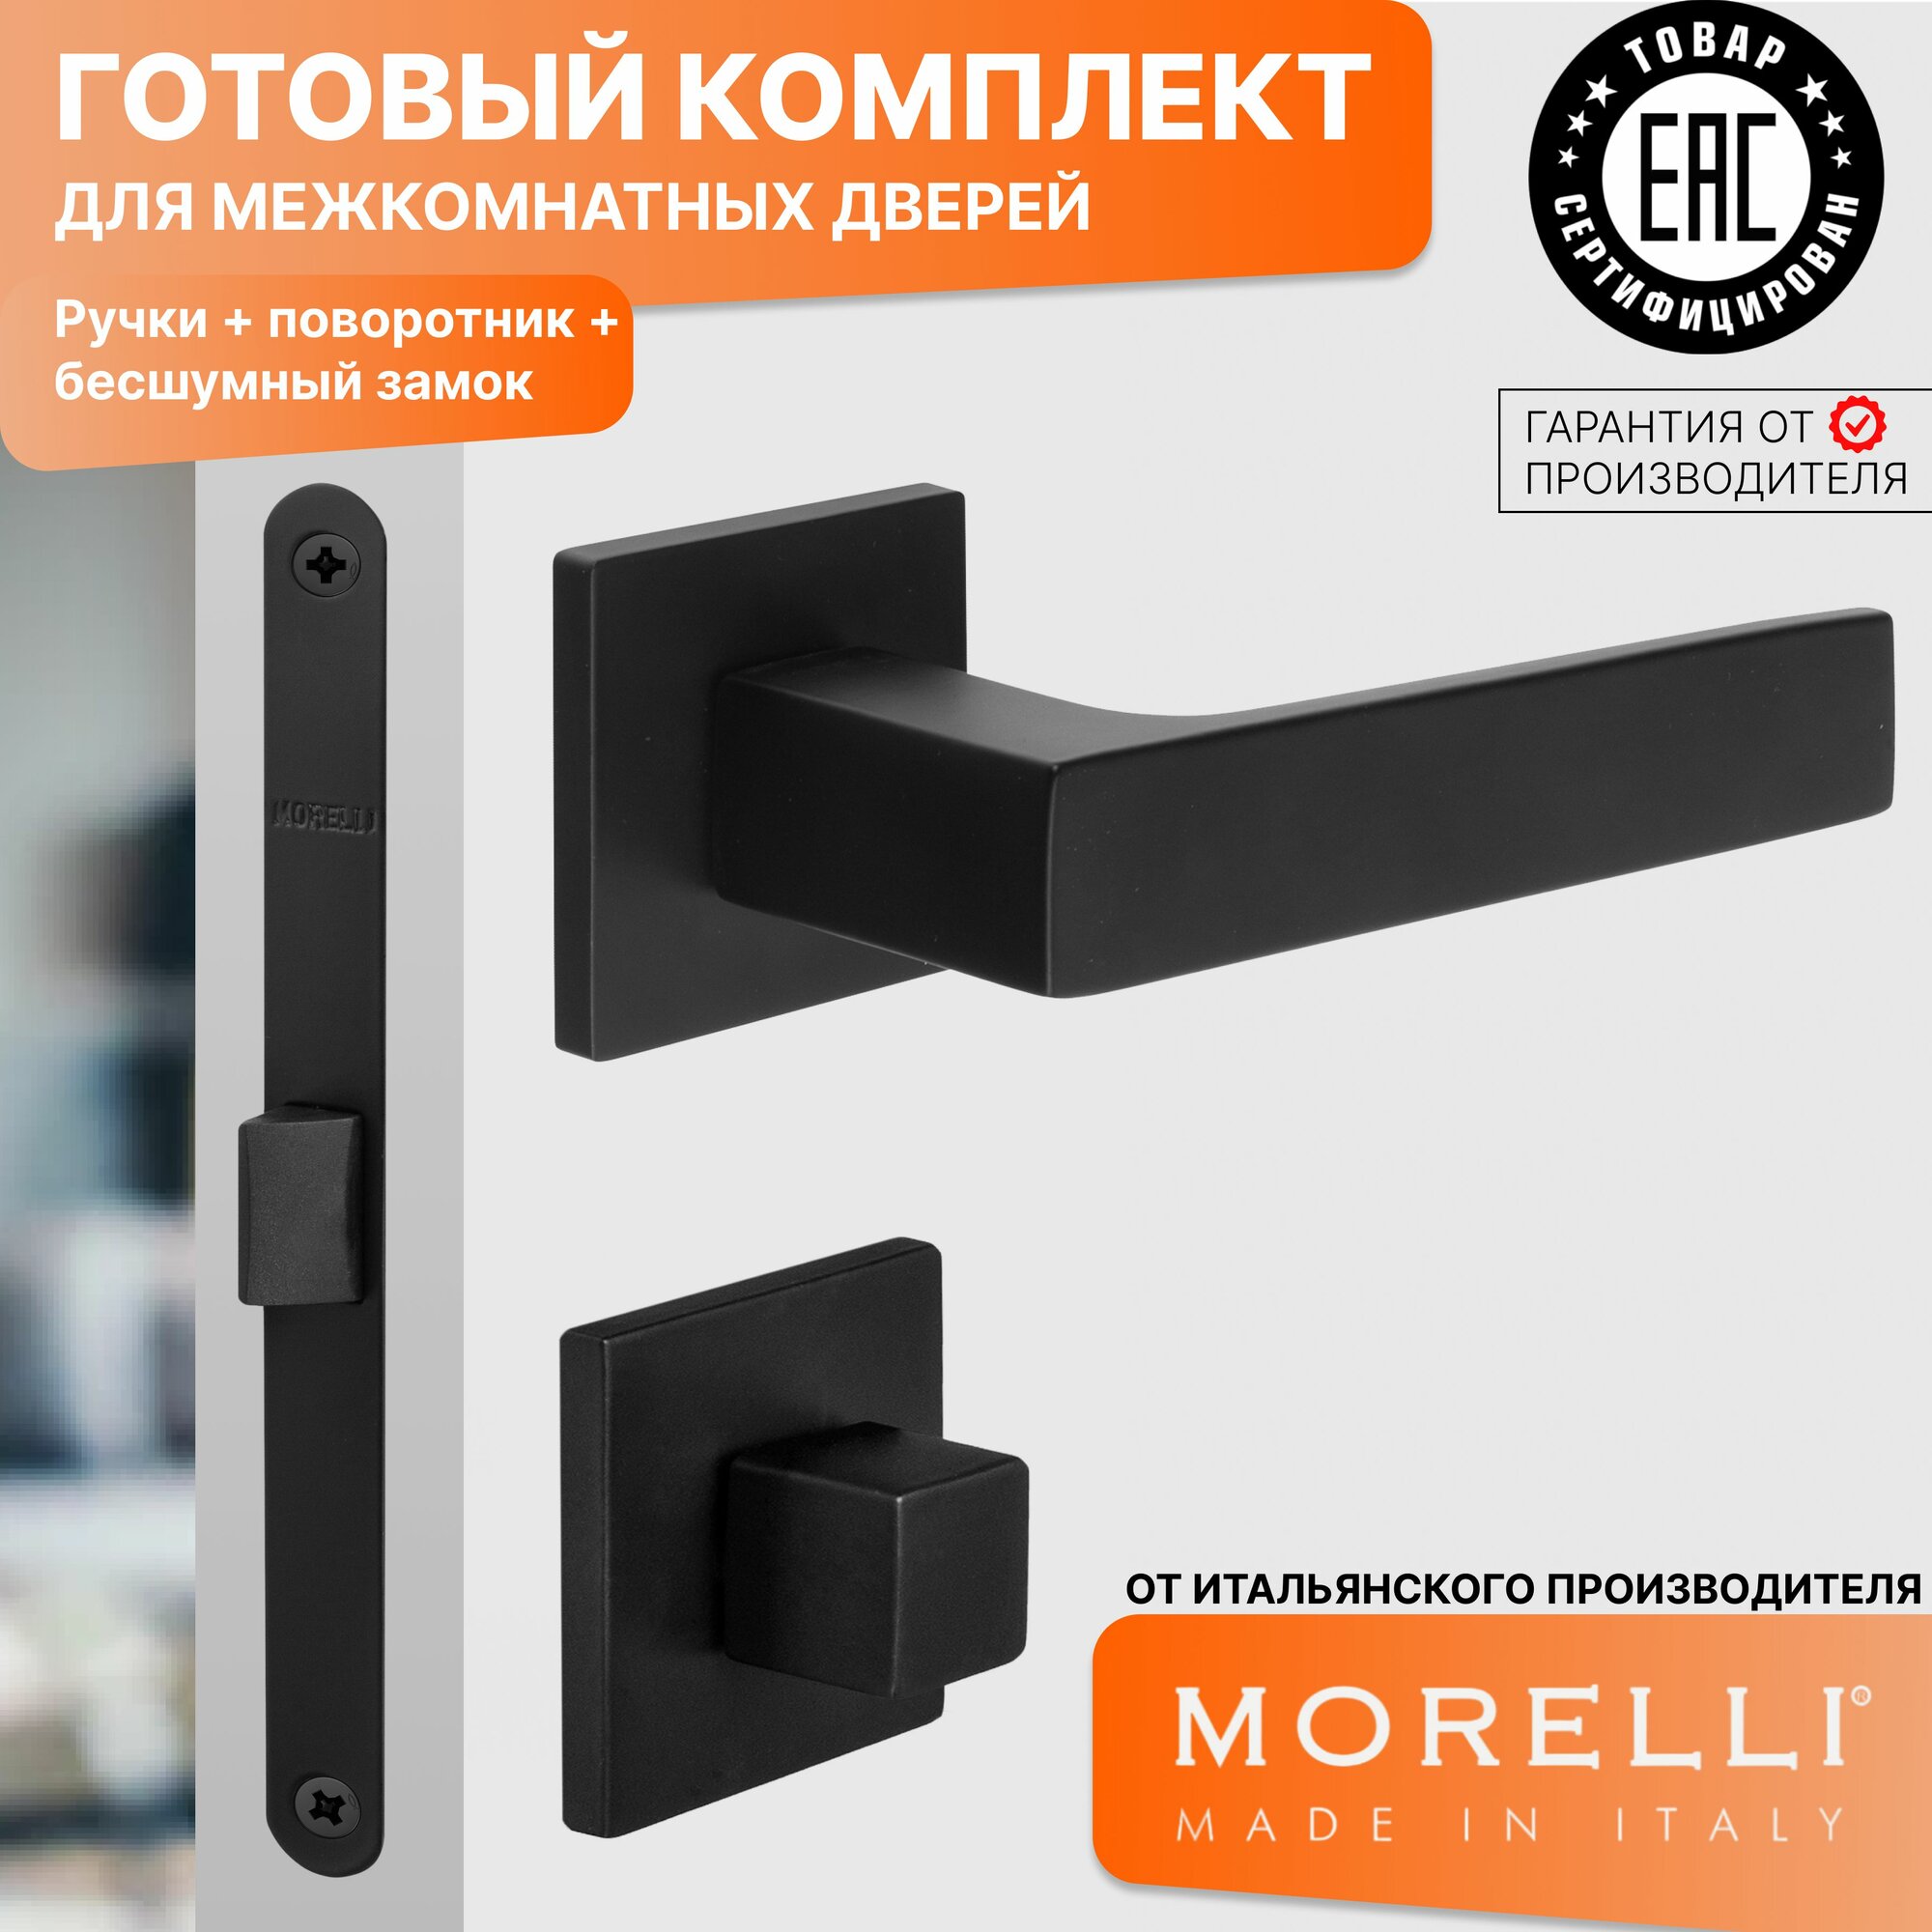 Комплект для межкомнатной двери Morelli / Дверная ручка MH 54 S6 BL + поворотник + бесшумный замок / черный матовый